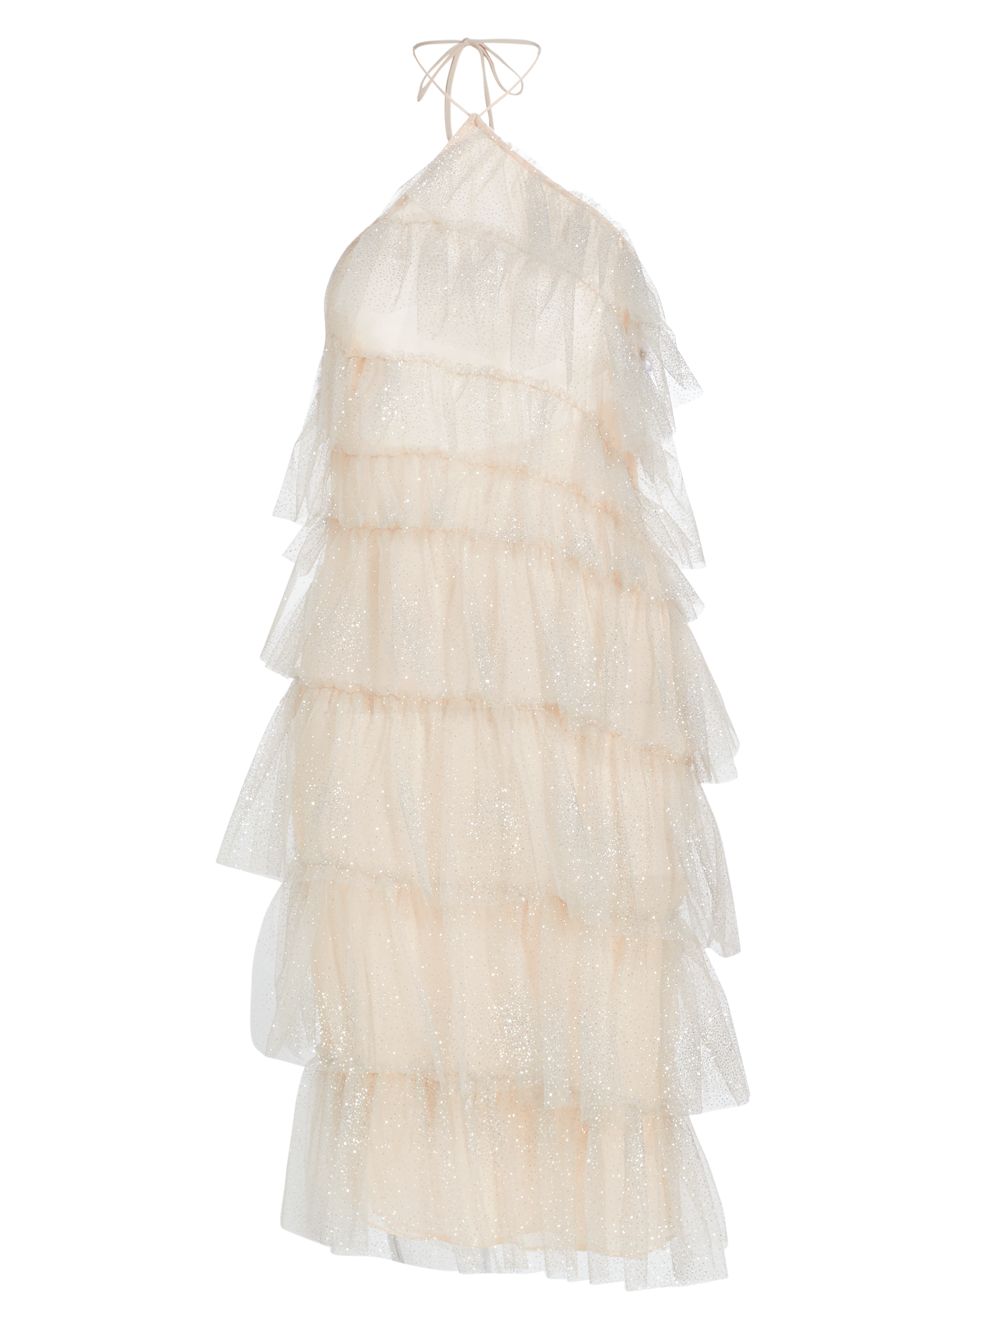 Мини-платье Sparkle Kai из тюля с лямкой на шее The Bar